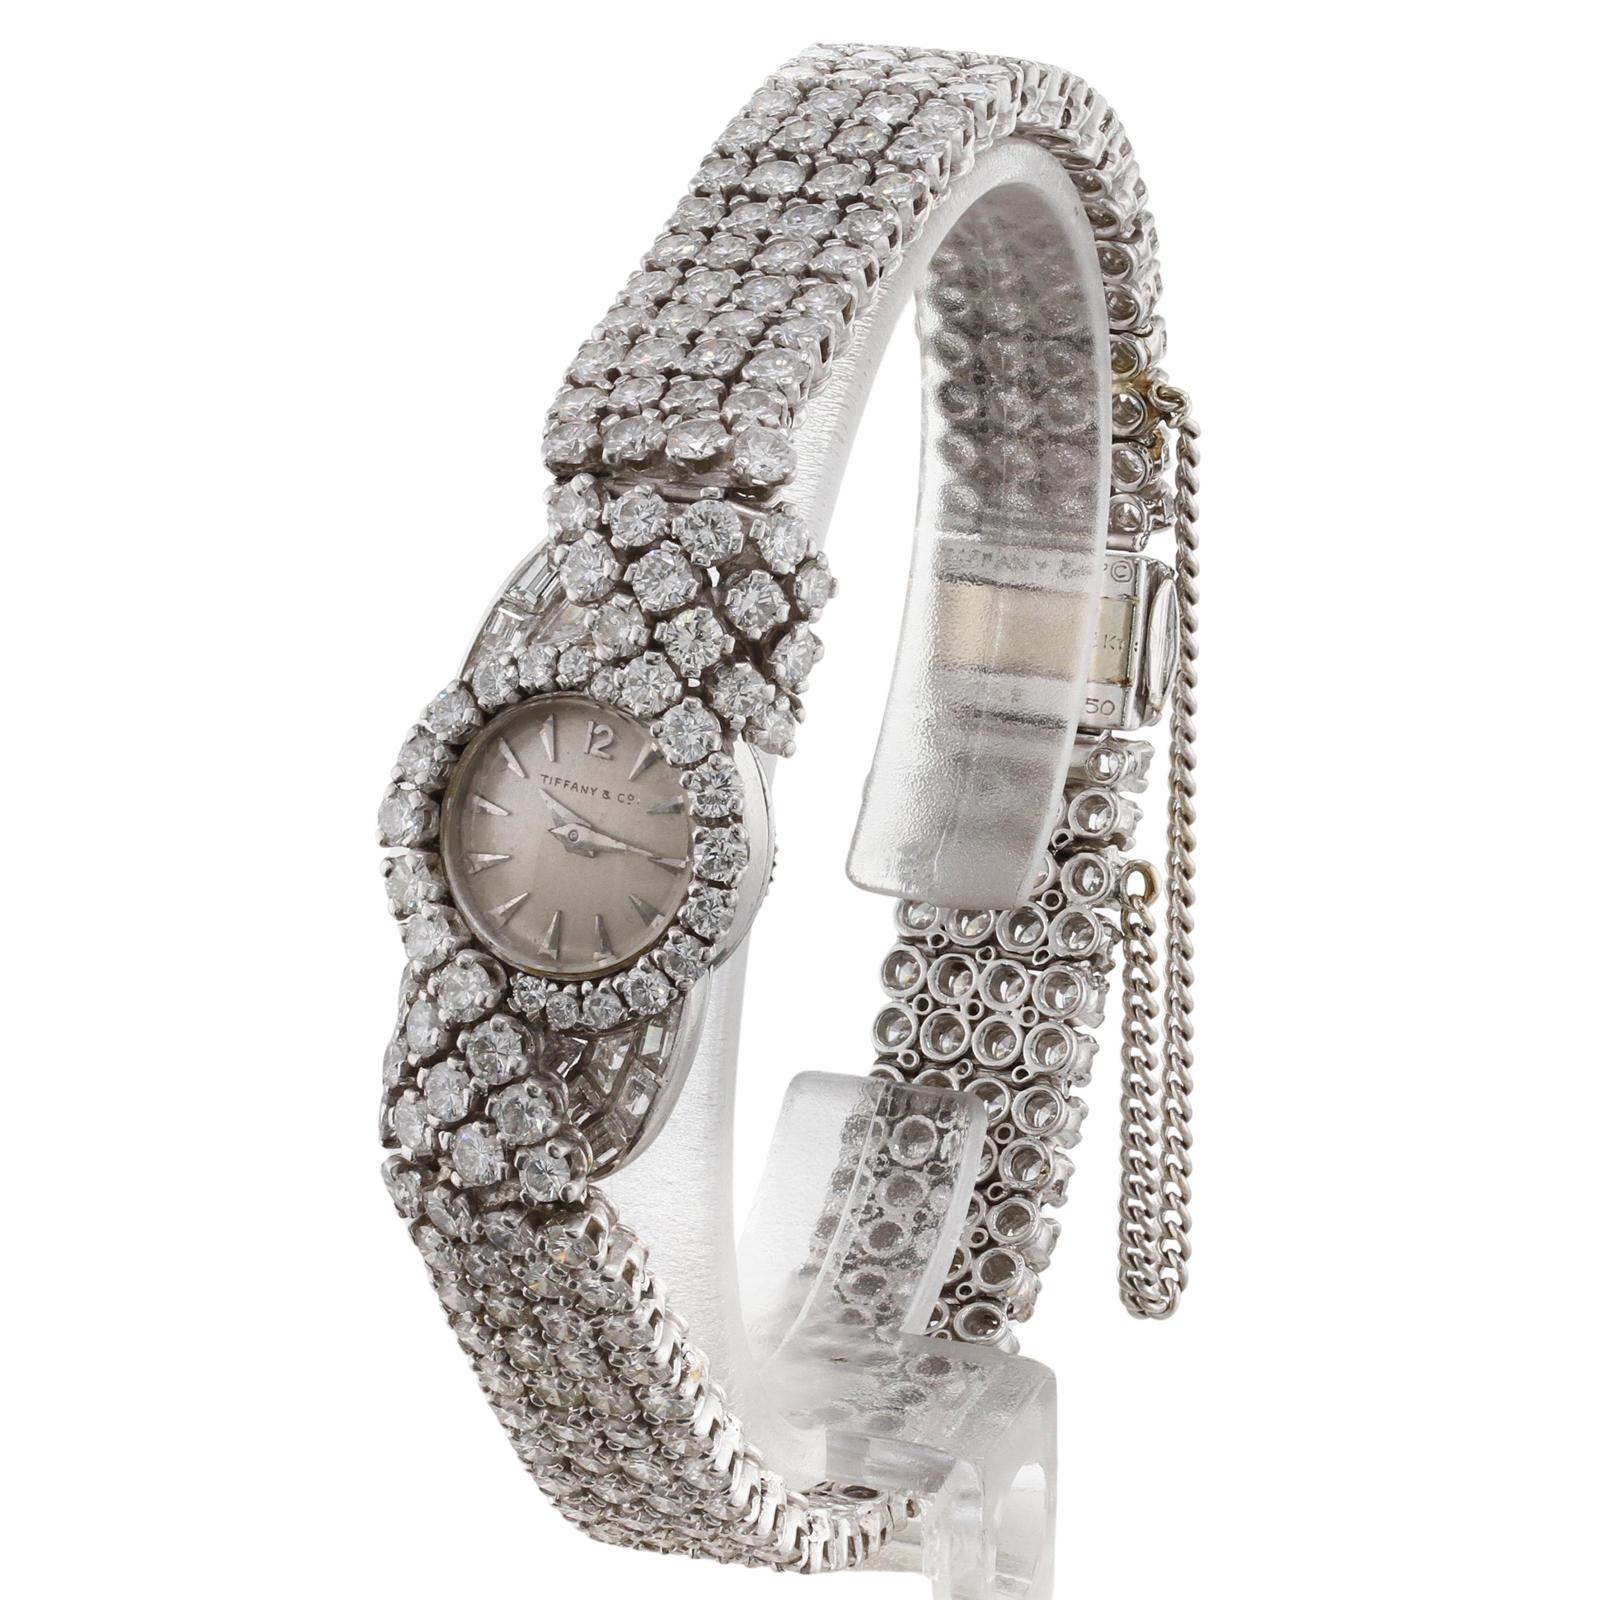 Diese exquisite, authentische Retro-Armbanduhr wurde von Blancpain für Tiffany & Co. entworfen, ist aus Platin gefertigt und mit F-G-H VVS1-VVS2-Diamanten mit einem geschätzten Gewicht von 15,0 bis 16,0 Karat besetzt. Ein Teil des Verschlusses ist